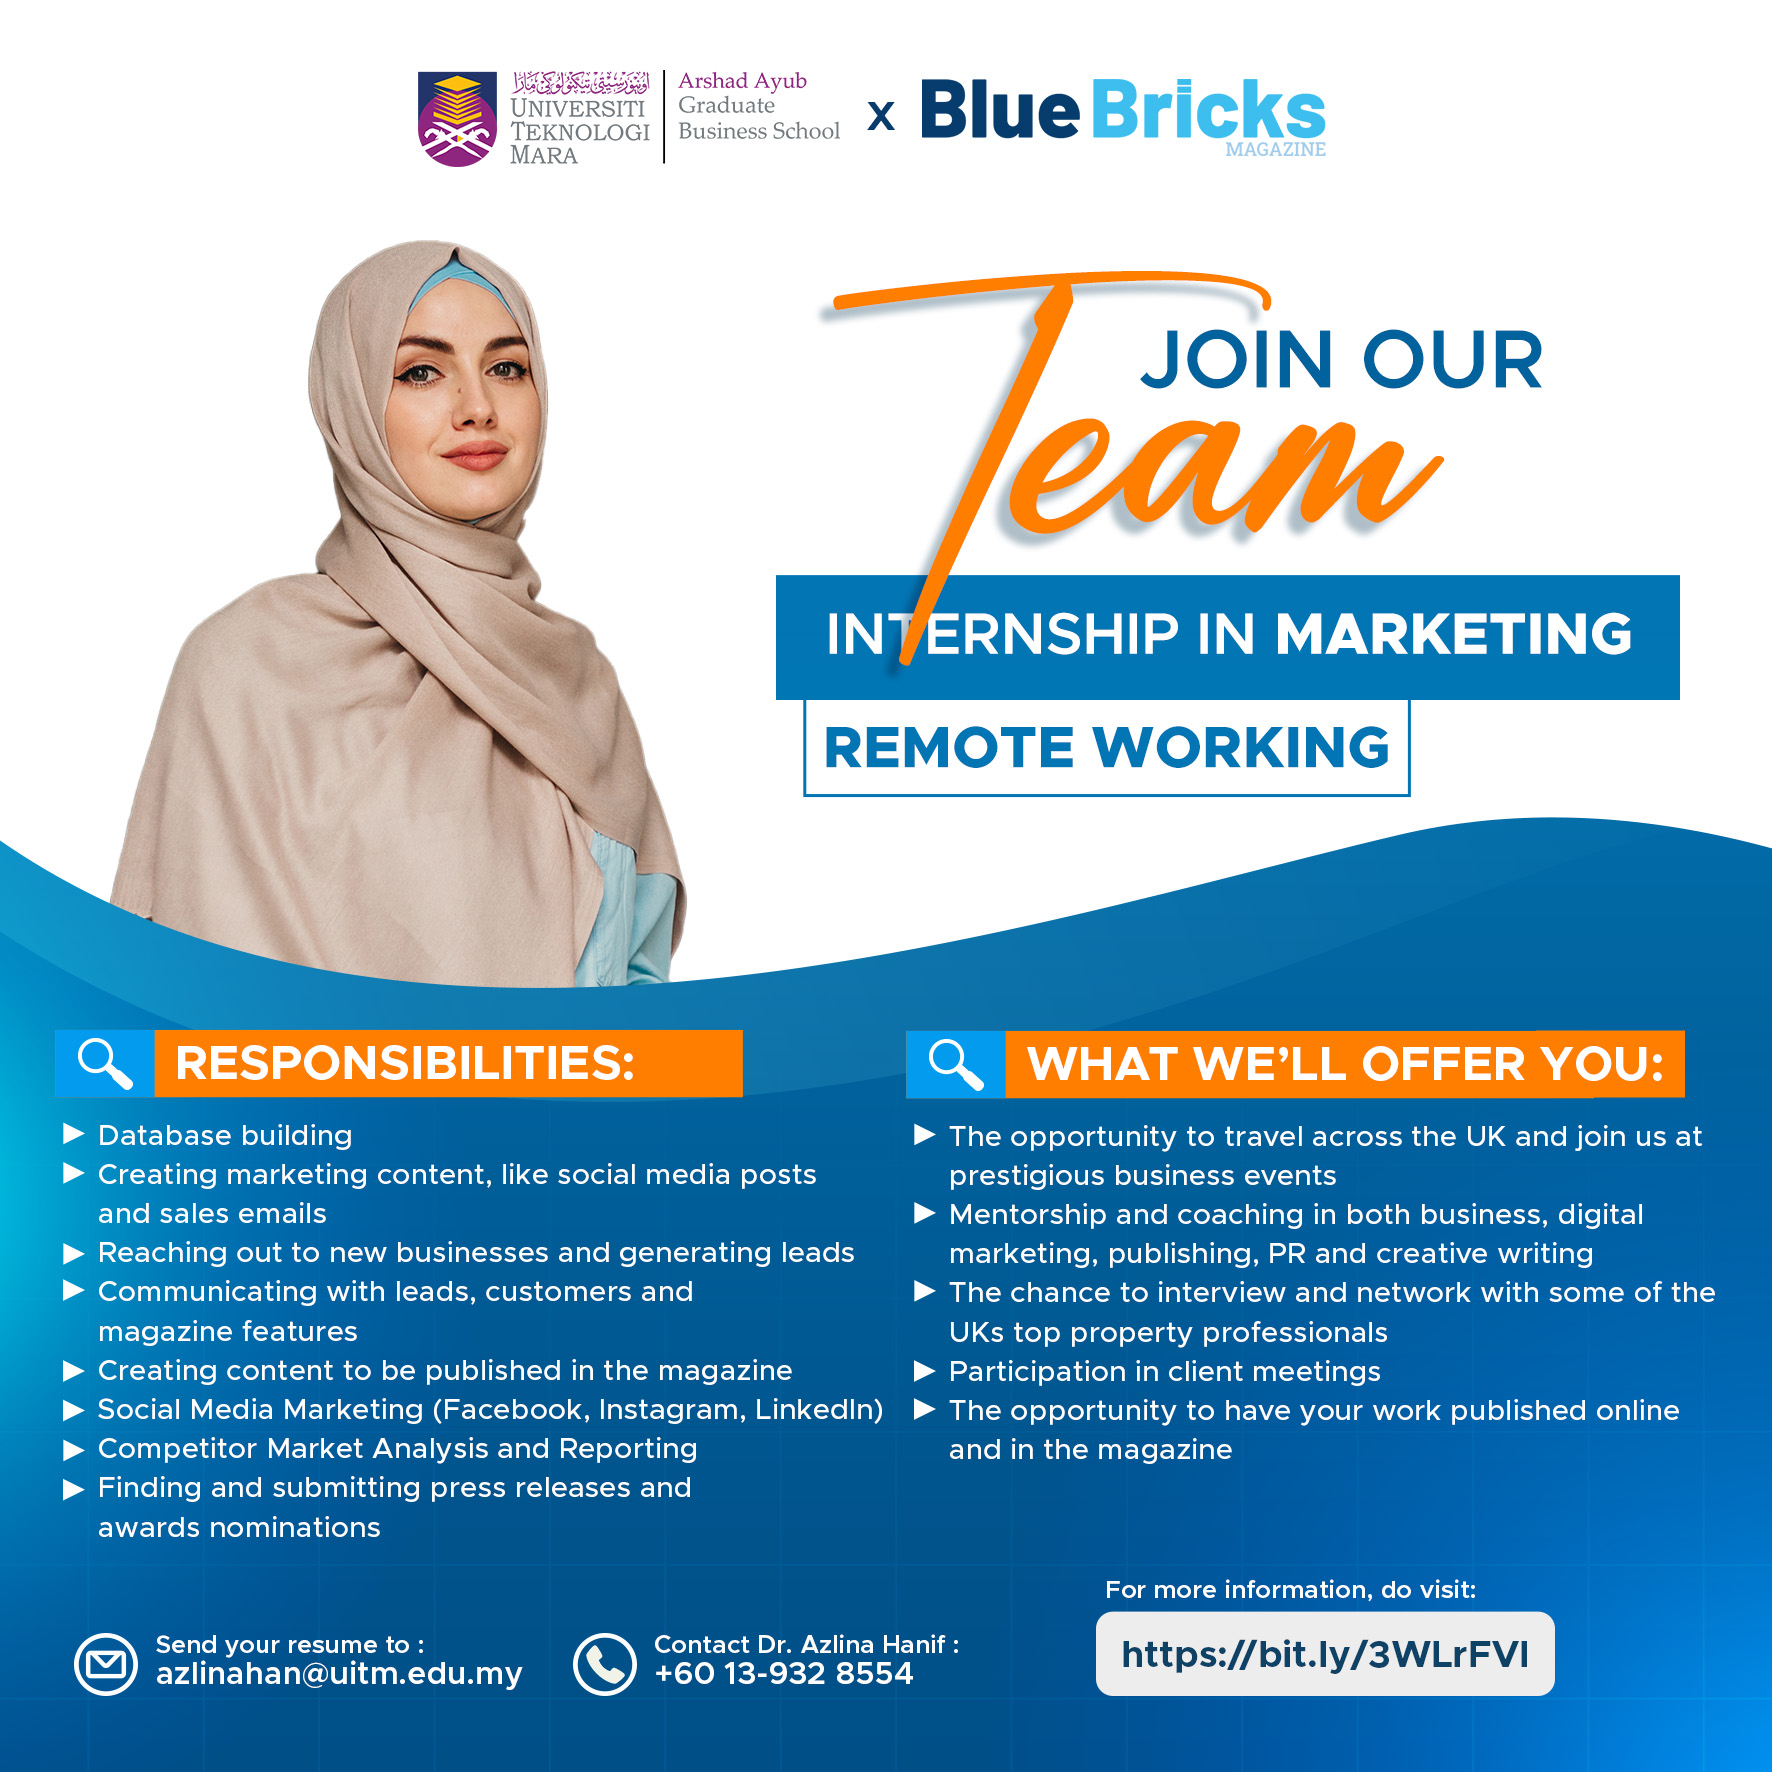 Internship in Marketing with Blue Bricks Magazine Ltd.